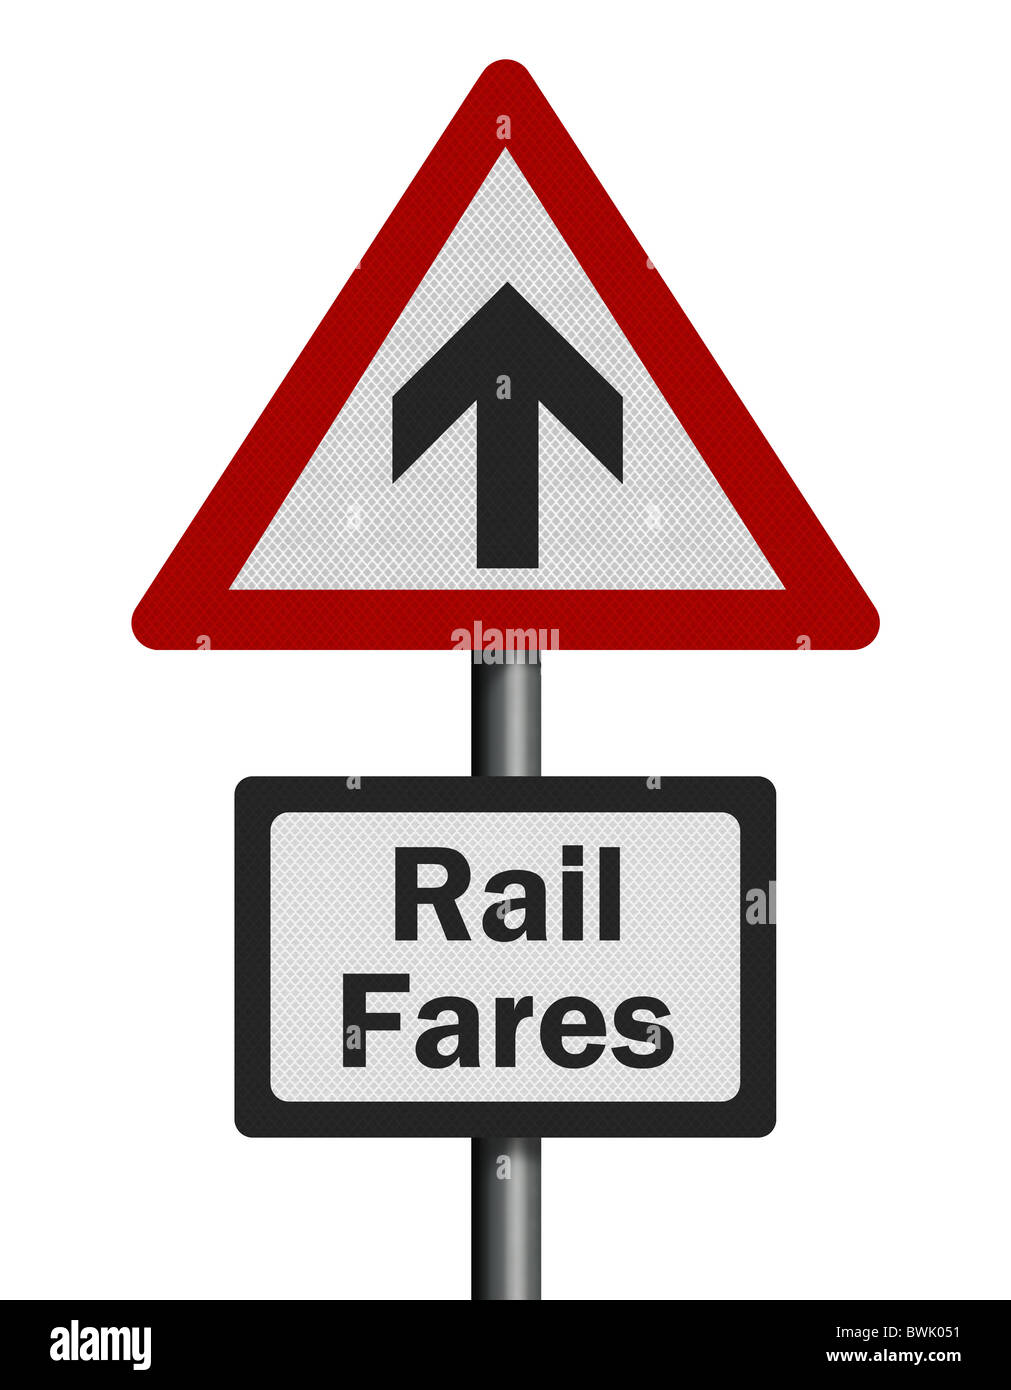 Foto realista metálica reflectante "ferrocarril aumento" Signo, aislado en un fondo blanco puro. Foto de stock